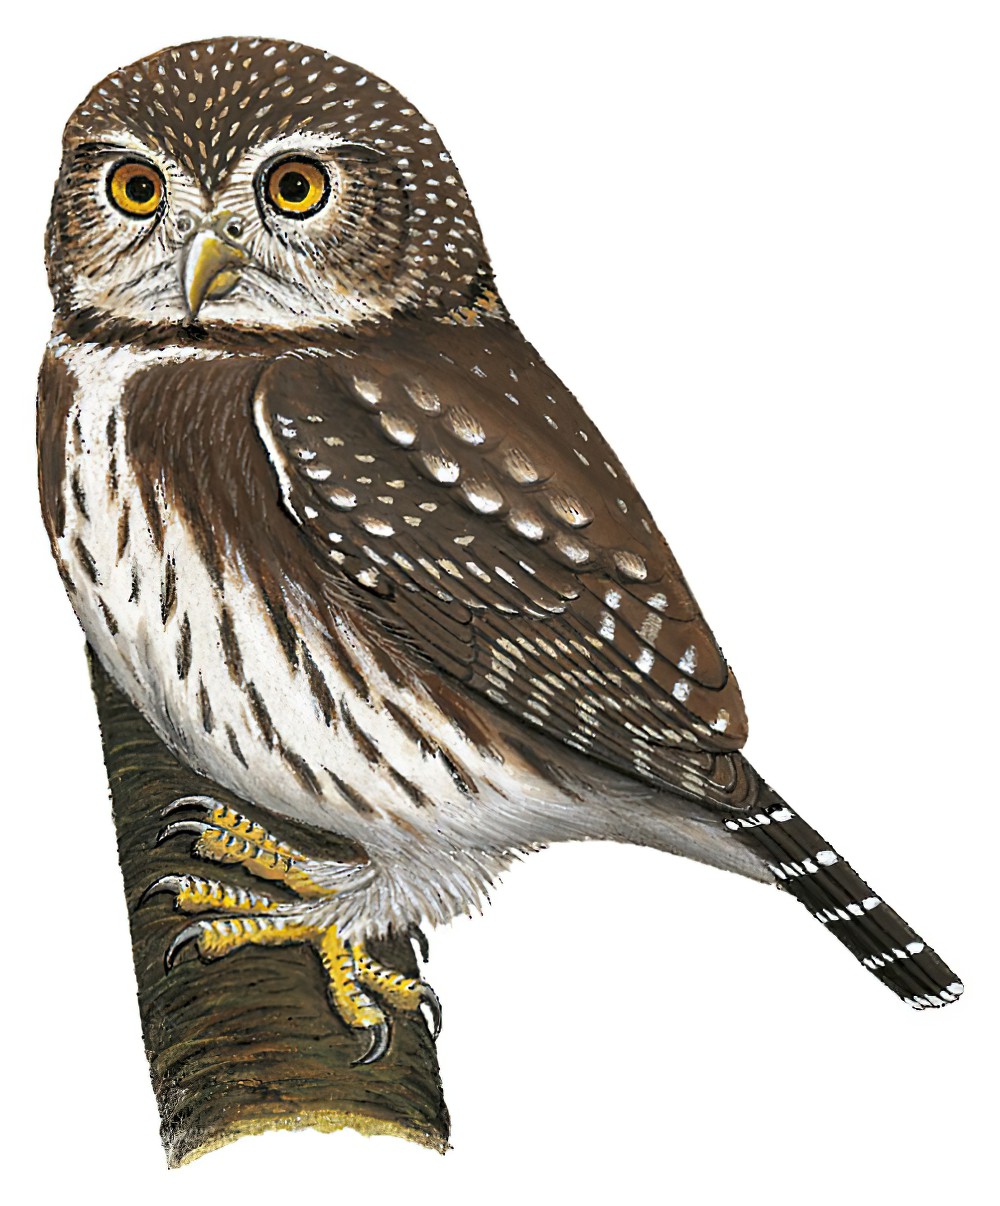 Ferruginous Pygmy-Owl / Glaucidium brasilianum